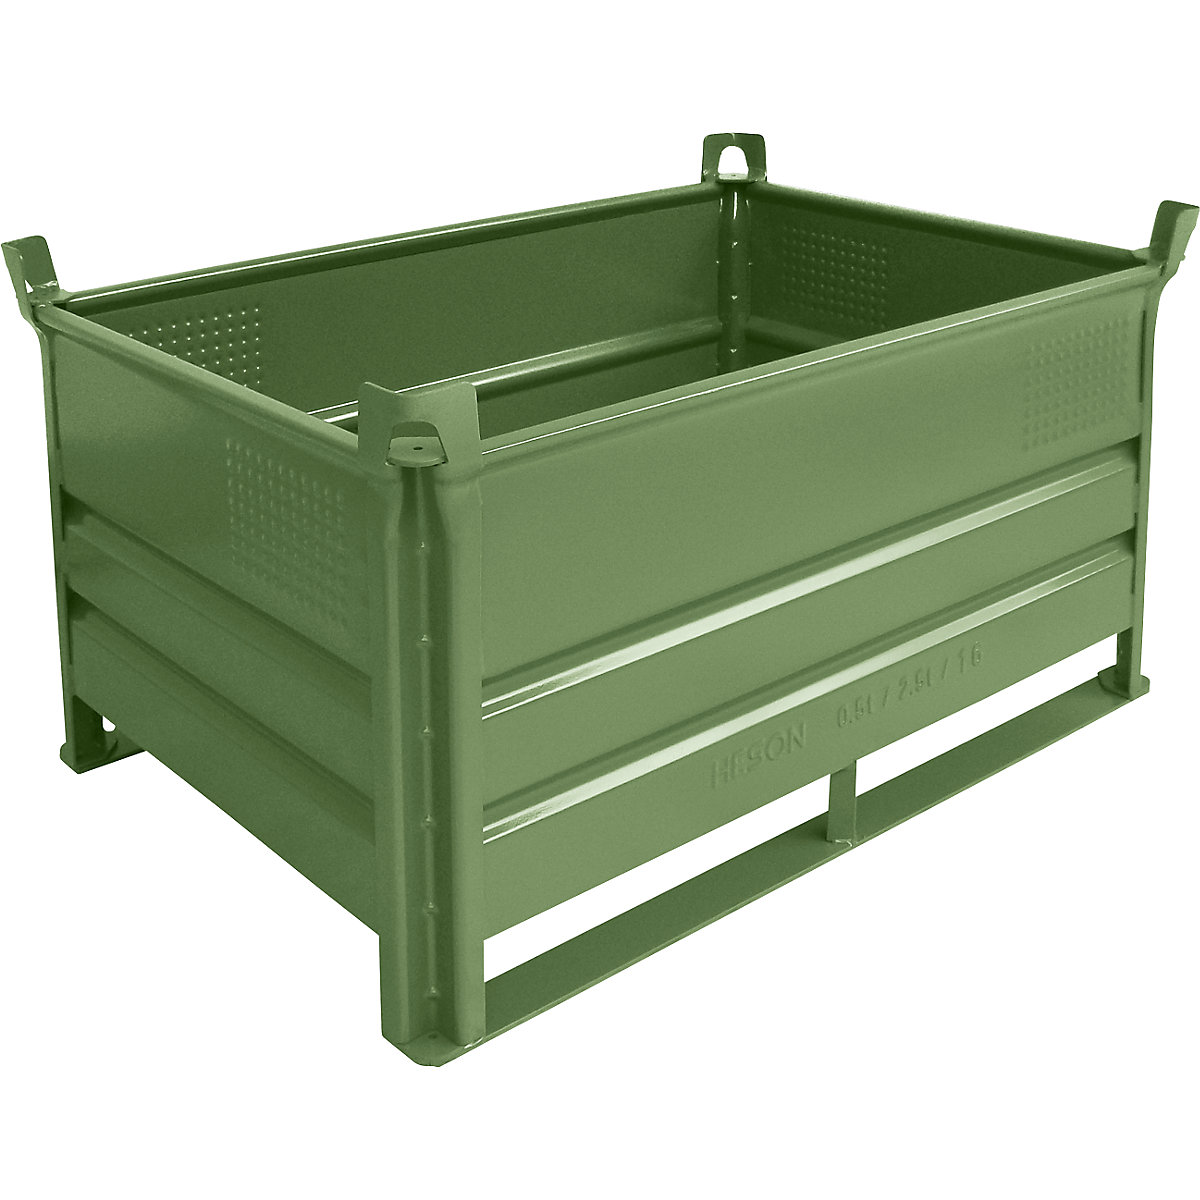 Heson Stapelbehälter mit Kufen, LxB 1200 x 800 mm, Traglast 2000 kg, grün, ab 5 Stk